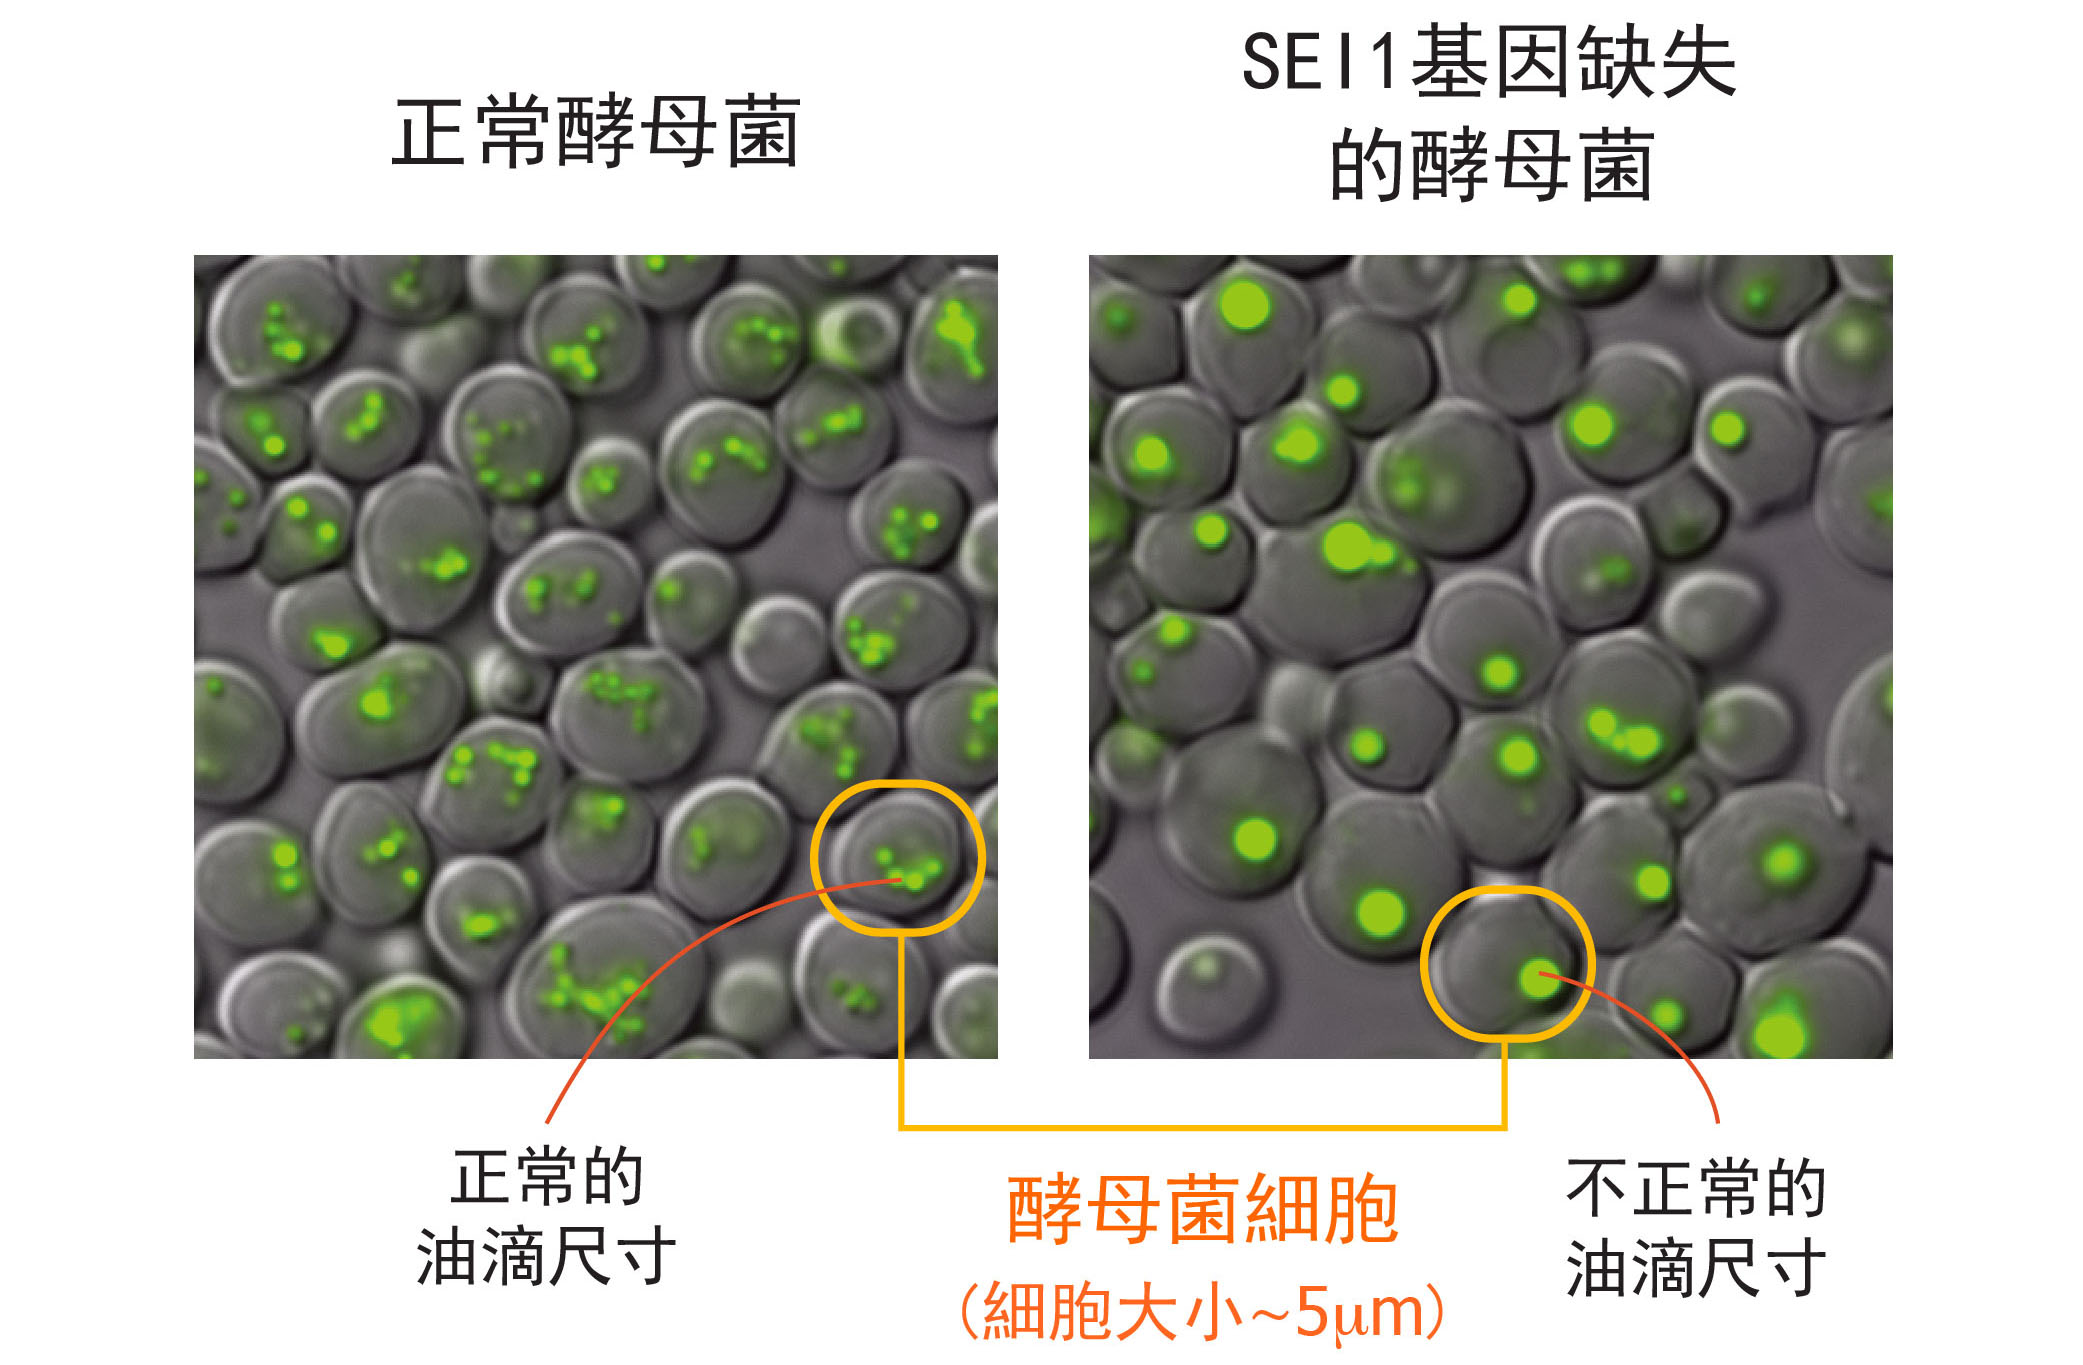 左圖為正常酵母菌細胞，右圖為酵母菌單一基因 SEI1 的突變株，右圖明顯可見：細胞中綠色部分標示的油滴尺寸變大、且數量變少。圖│王昭雯